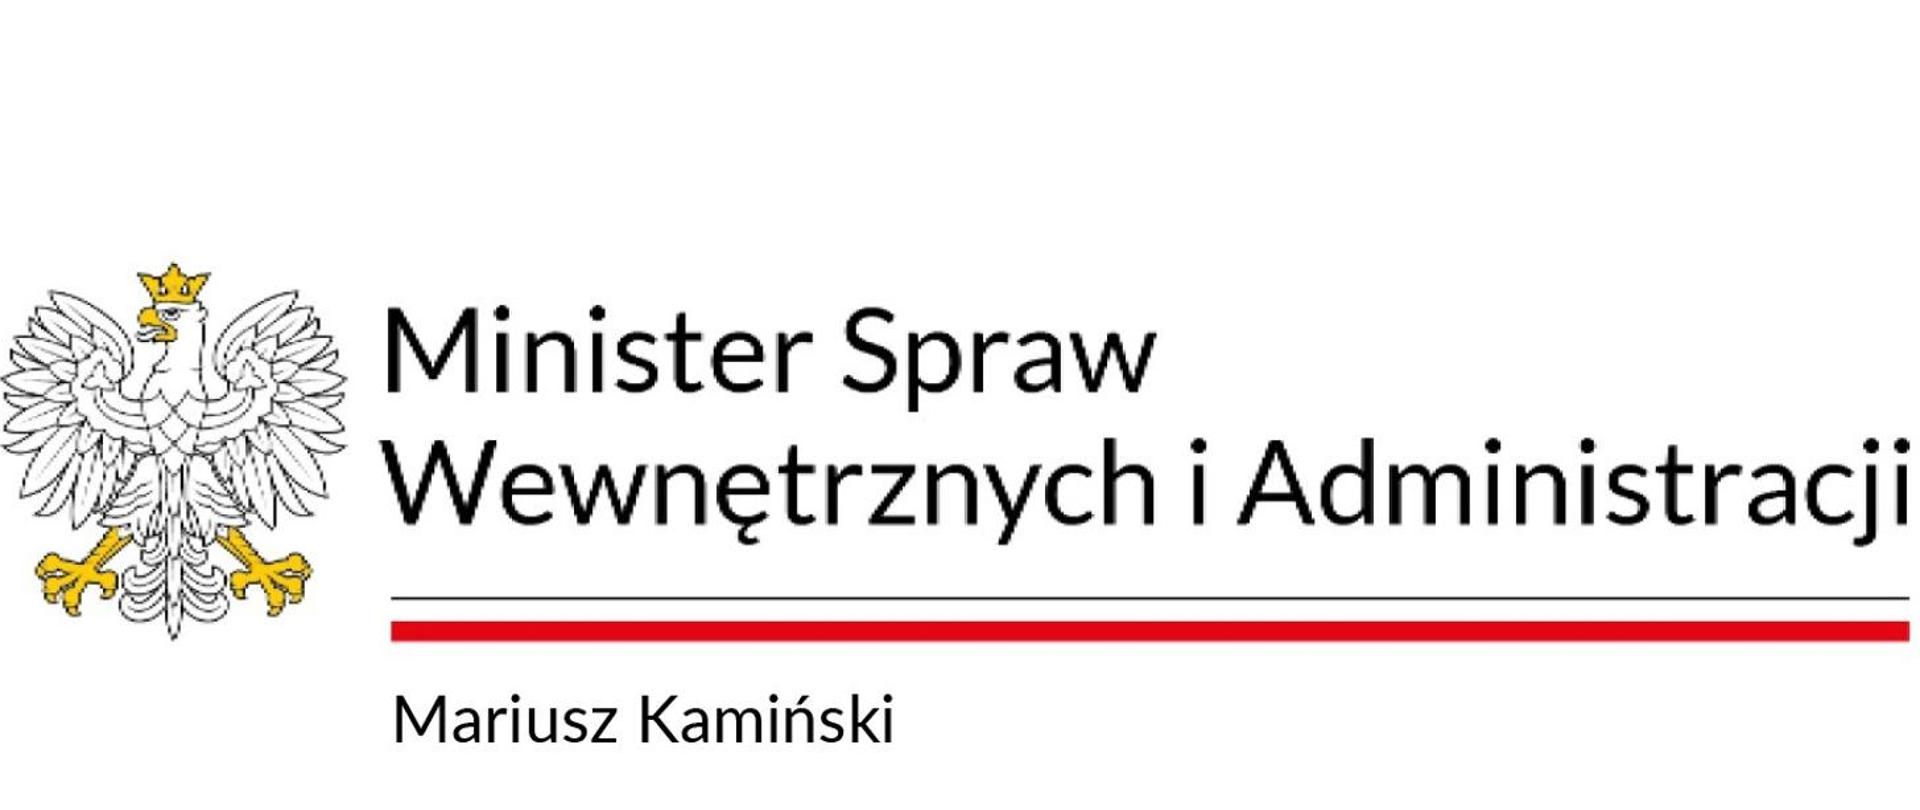 Na białym tle z lewej strony godło polski, biały orzeł, obok napis Minister Spraw Wewnętrznych i Administracji. Na dole napis Mariusz Kamiński.